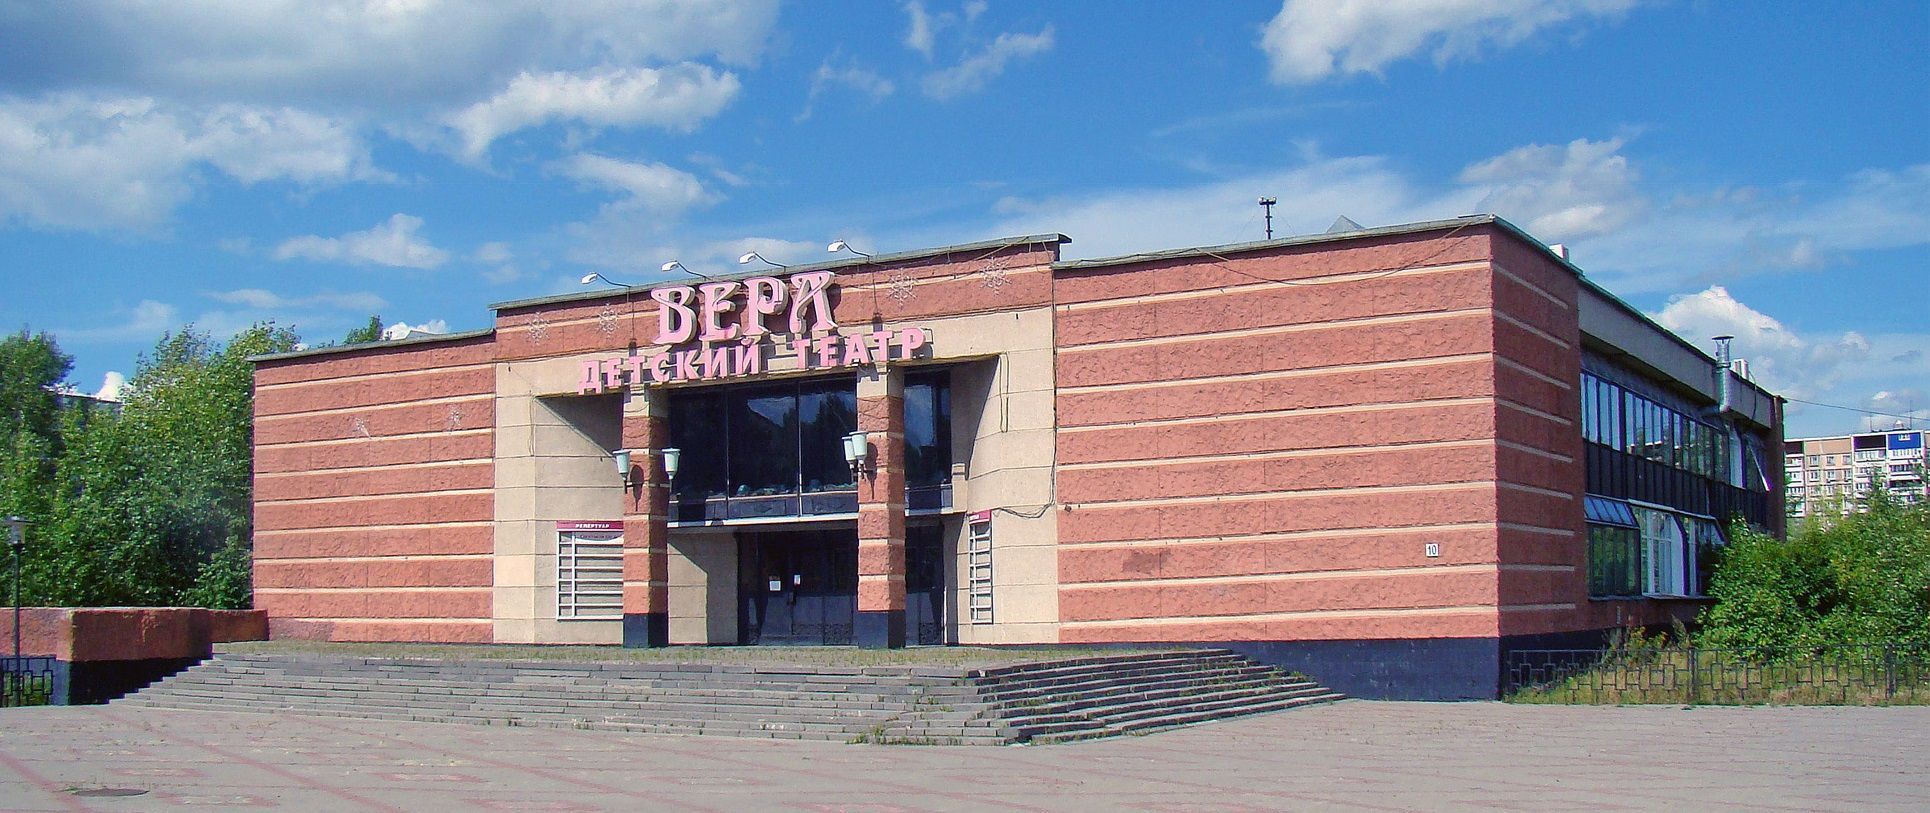 Театр Вера Нижний Новгород